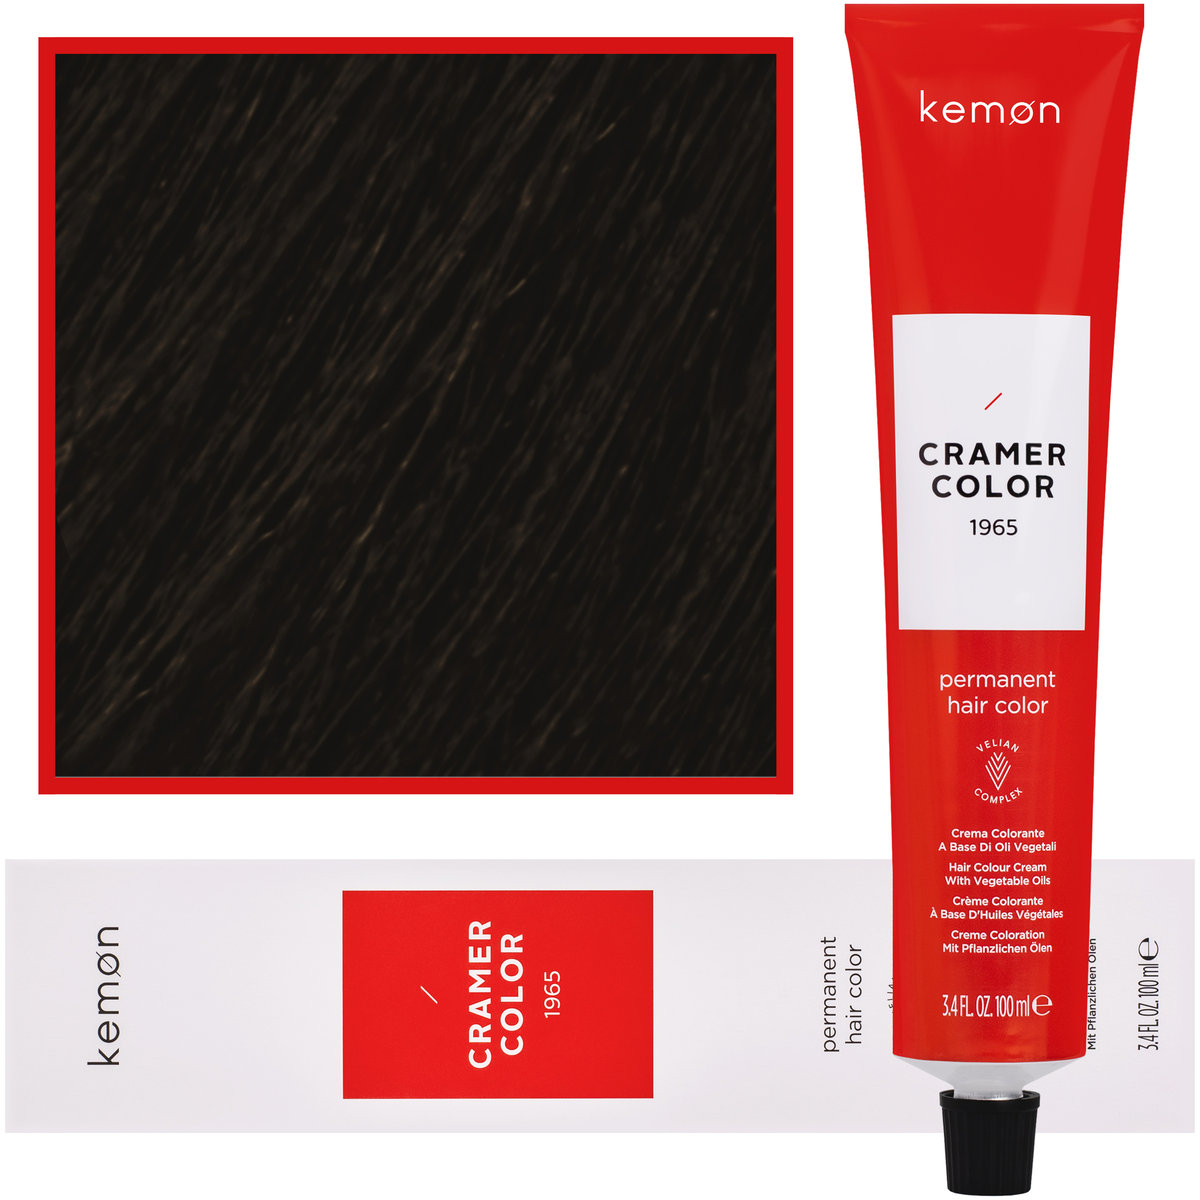 Kemon, Cramer Color 100ml kremowa farba do włosów z olejkami roślinnymi 6,008 Ciemny Nordycki Super Naturalny Blond